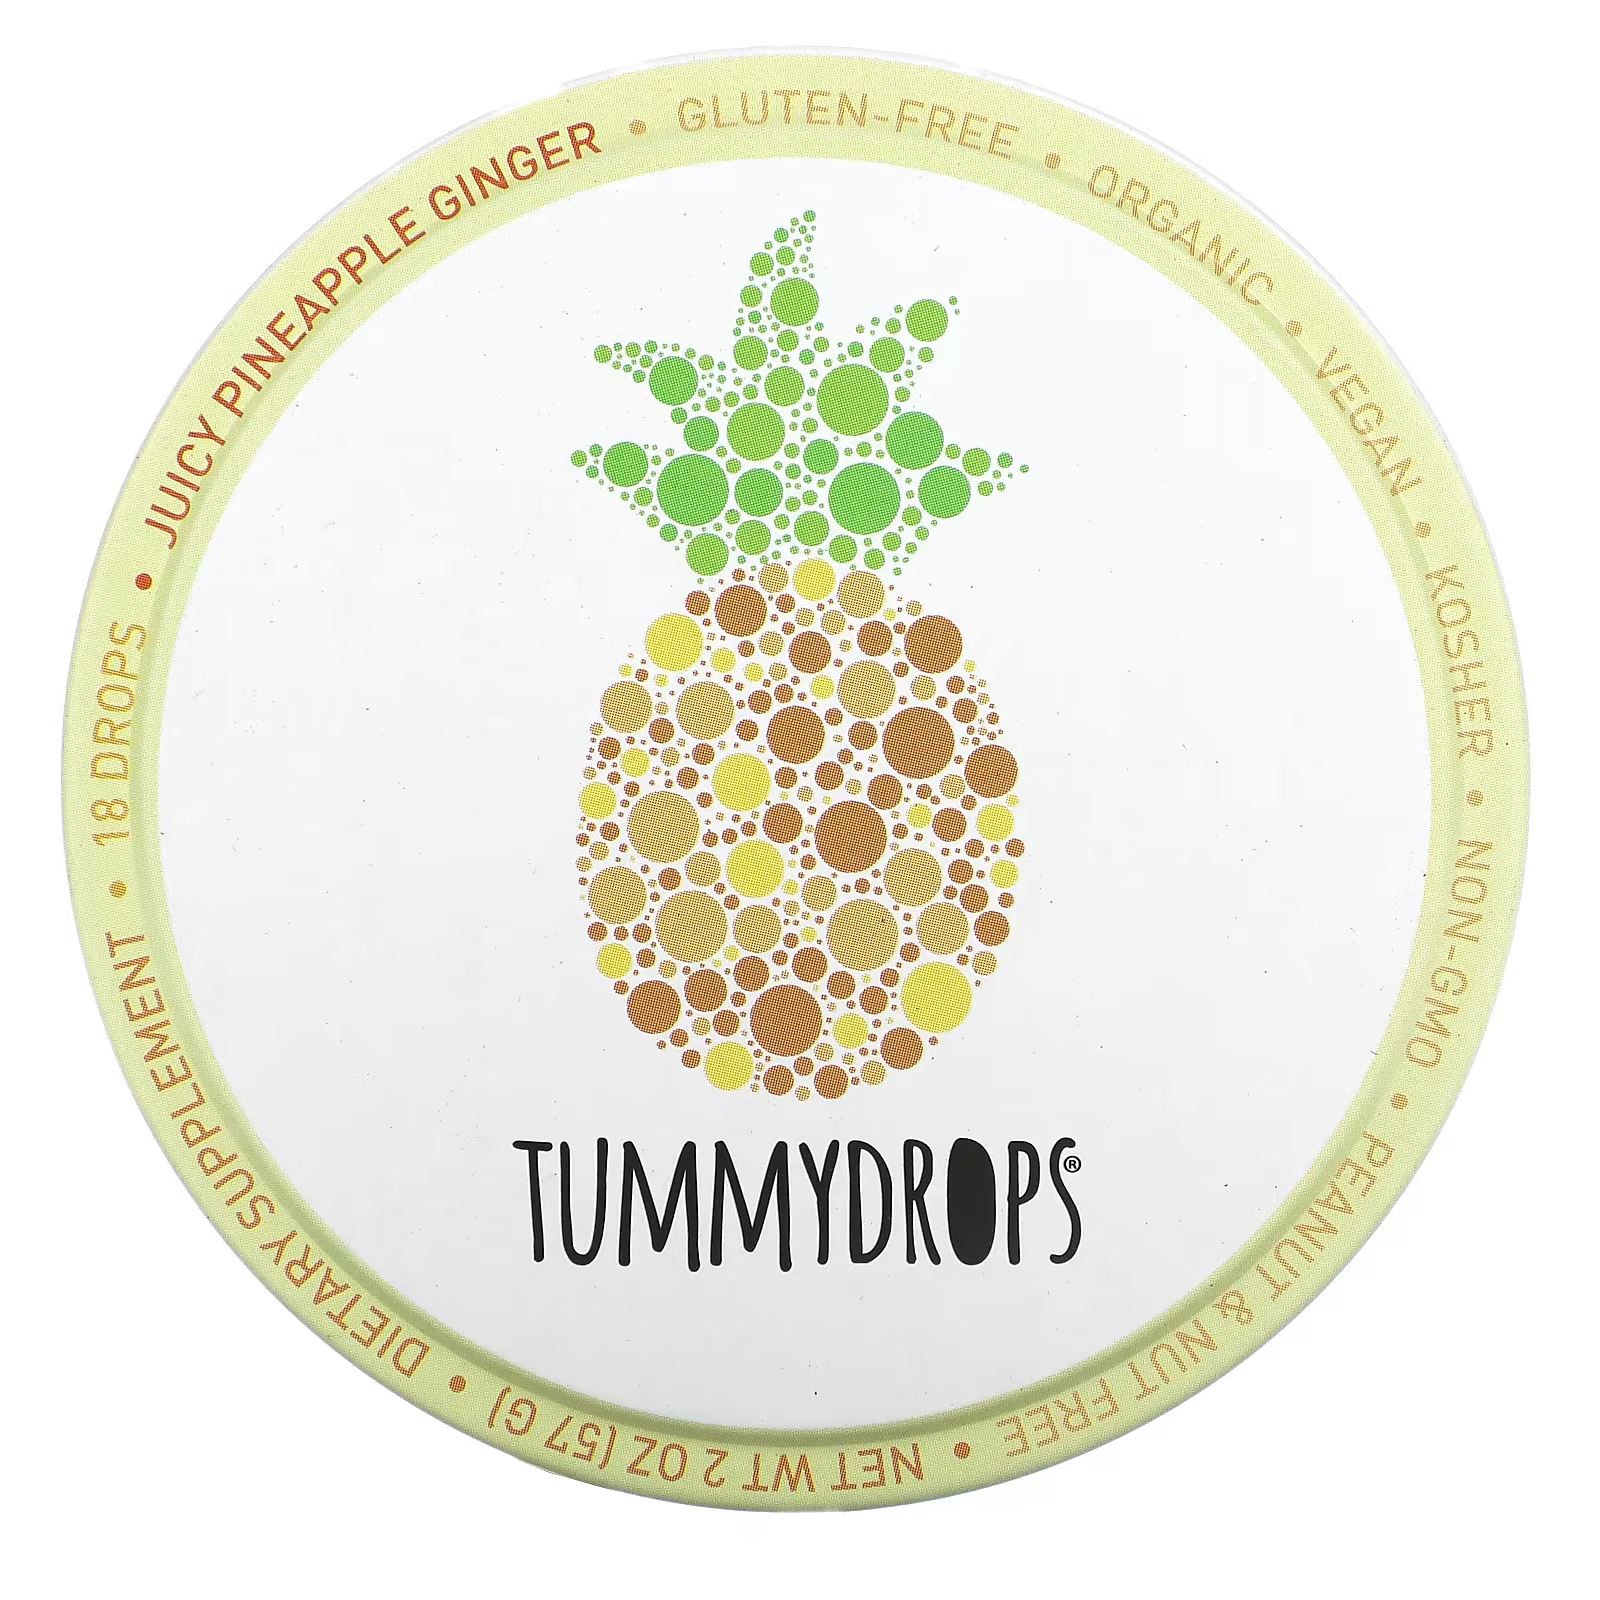 Капли имбирные Tummydrops ананасовые, 18 капель tummydrops сладкая имбирная груша 18 капель 57 г 2 унции